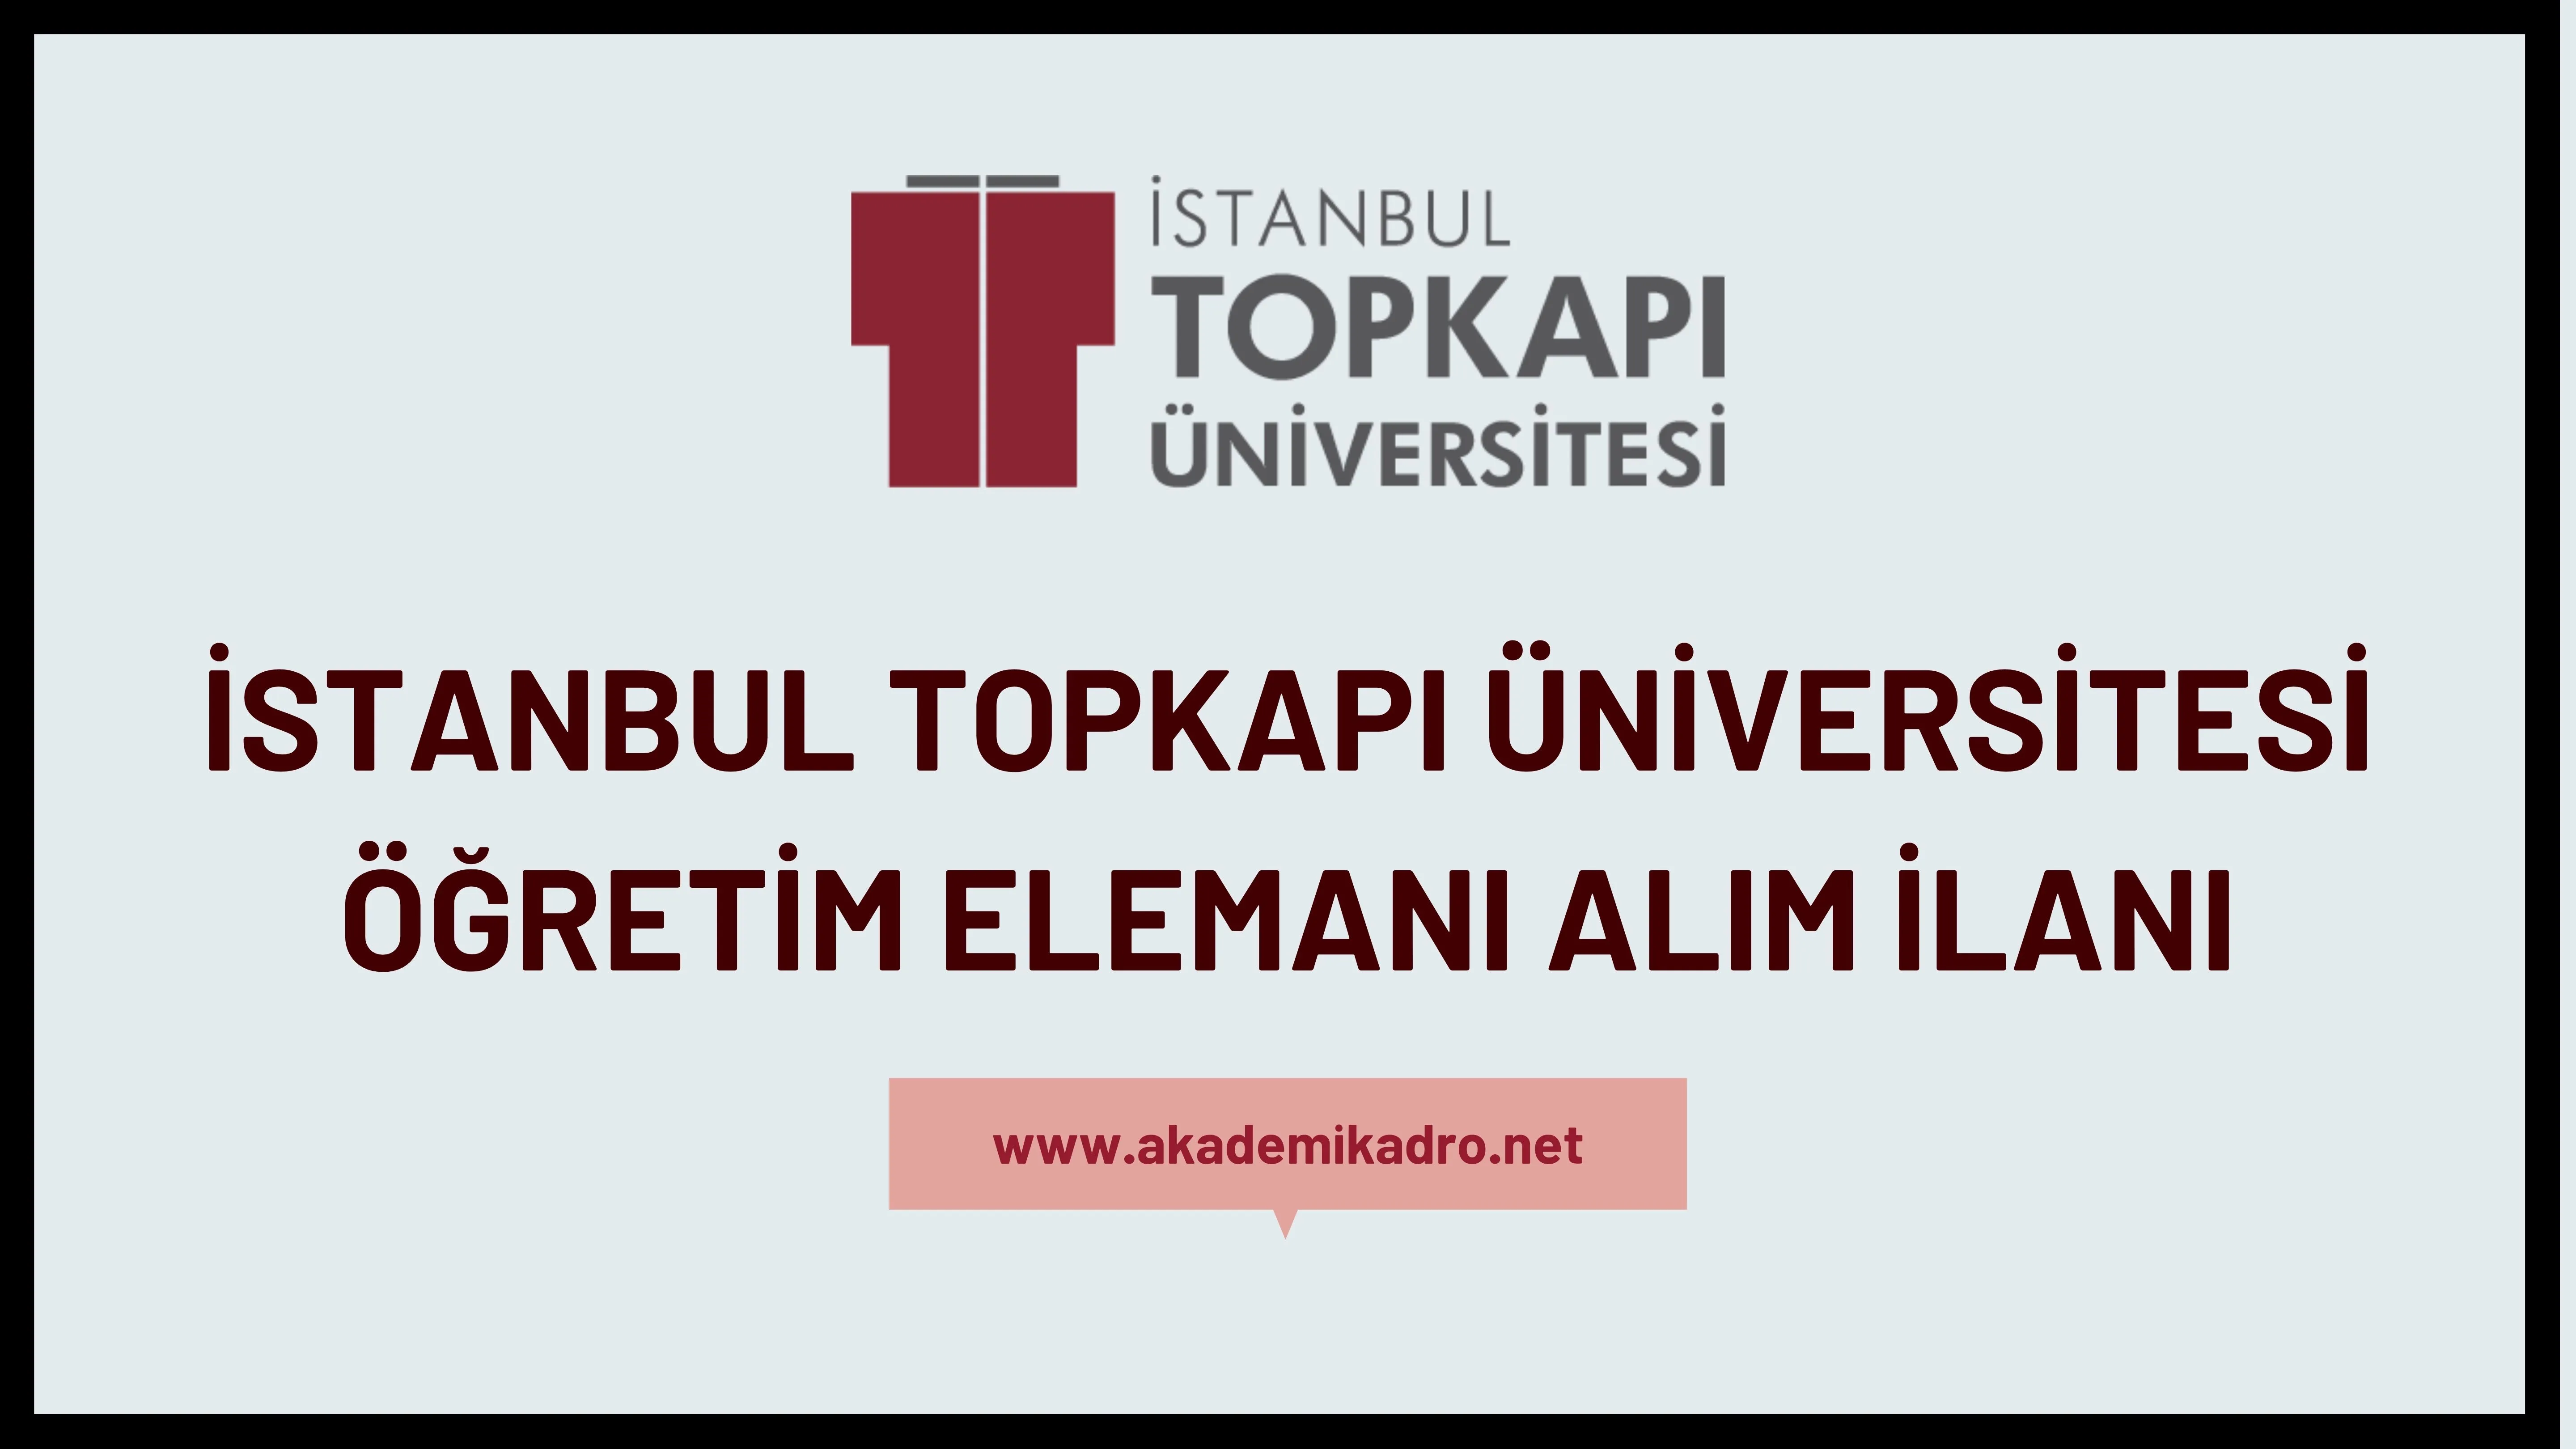 İstanbul Topkapı Üniversitesi 6 Araştırma görevlisi,4 Öğretim görevlisi ve birçok alandan 16 Öğretim üyesi alacak. Son başvuru tarihi 15 Kasım 2022.